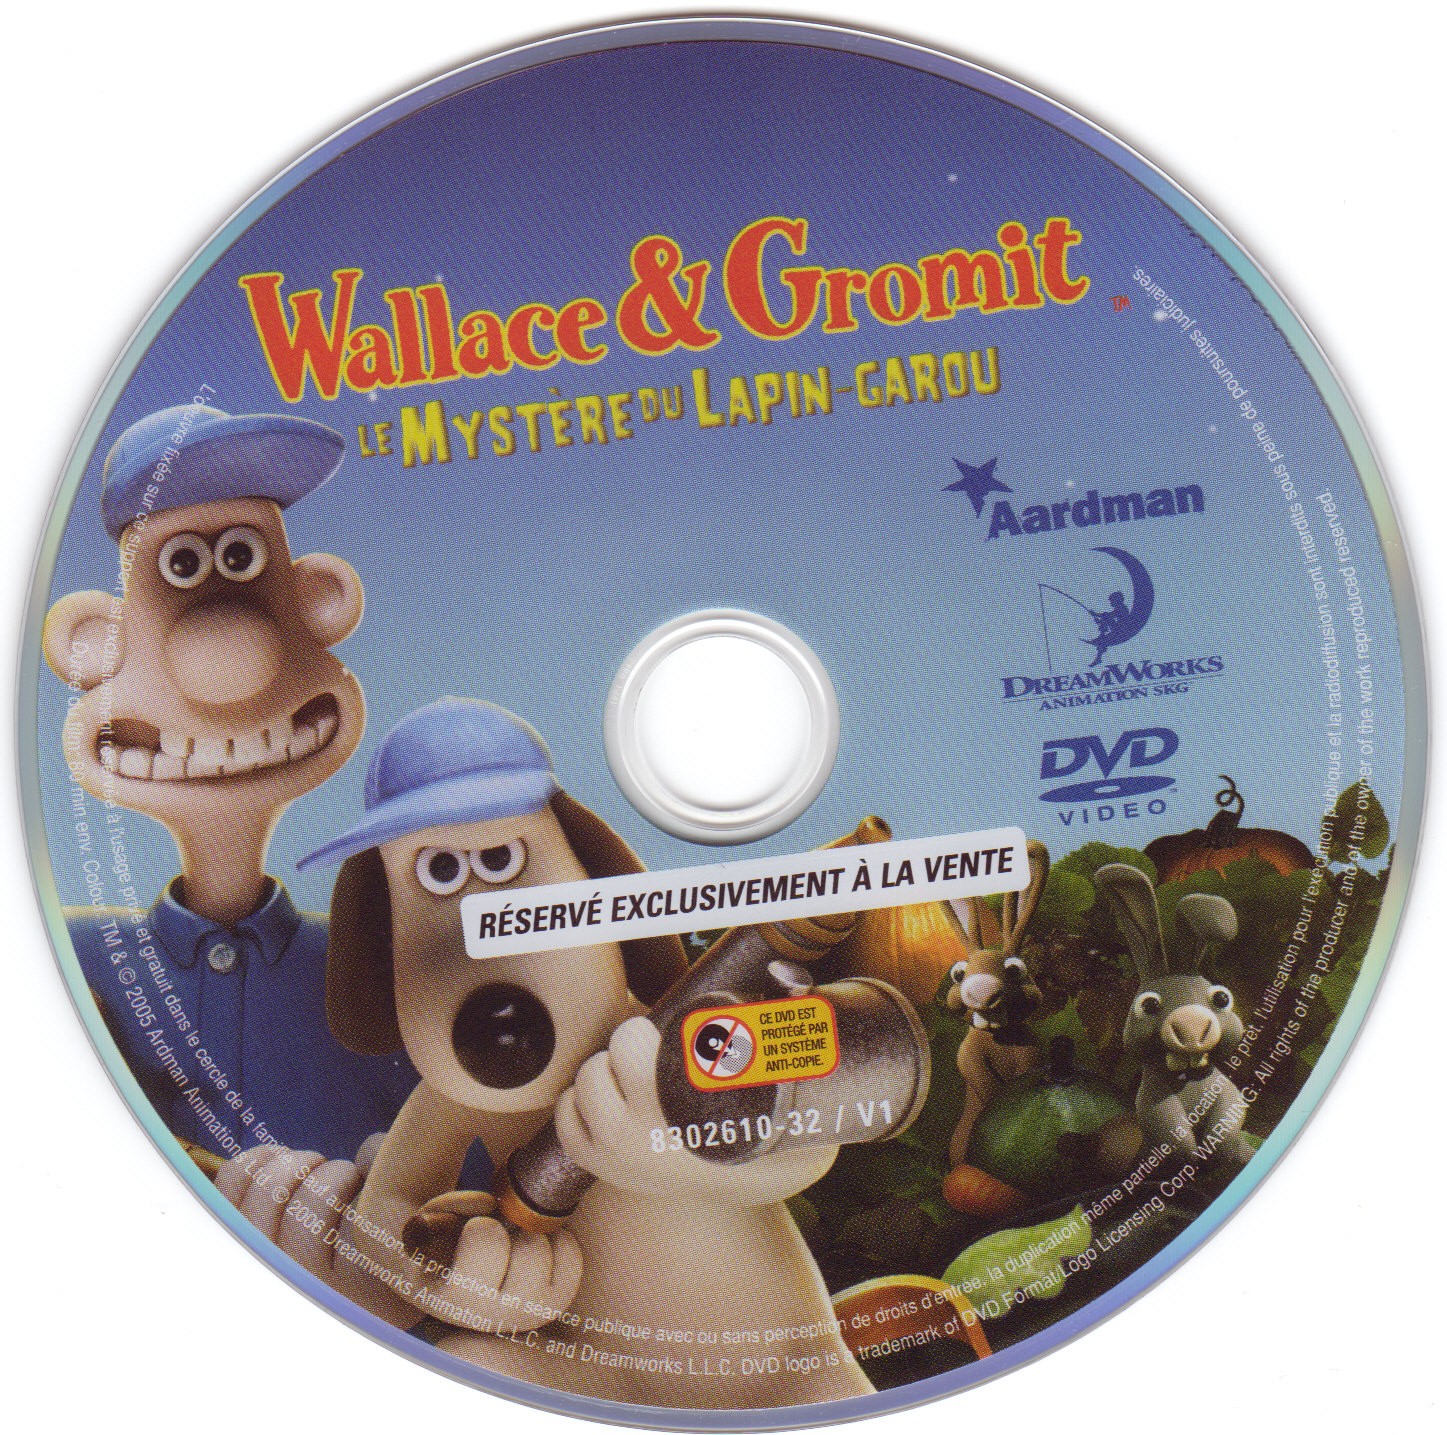 Wallace et Gromit Le mystere du lapin garou